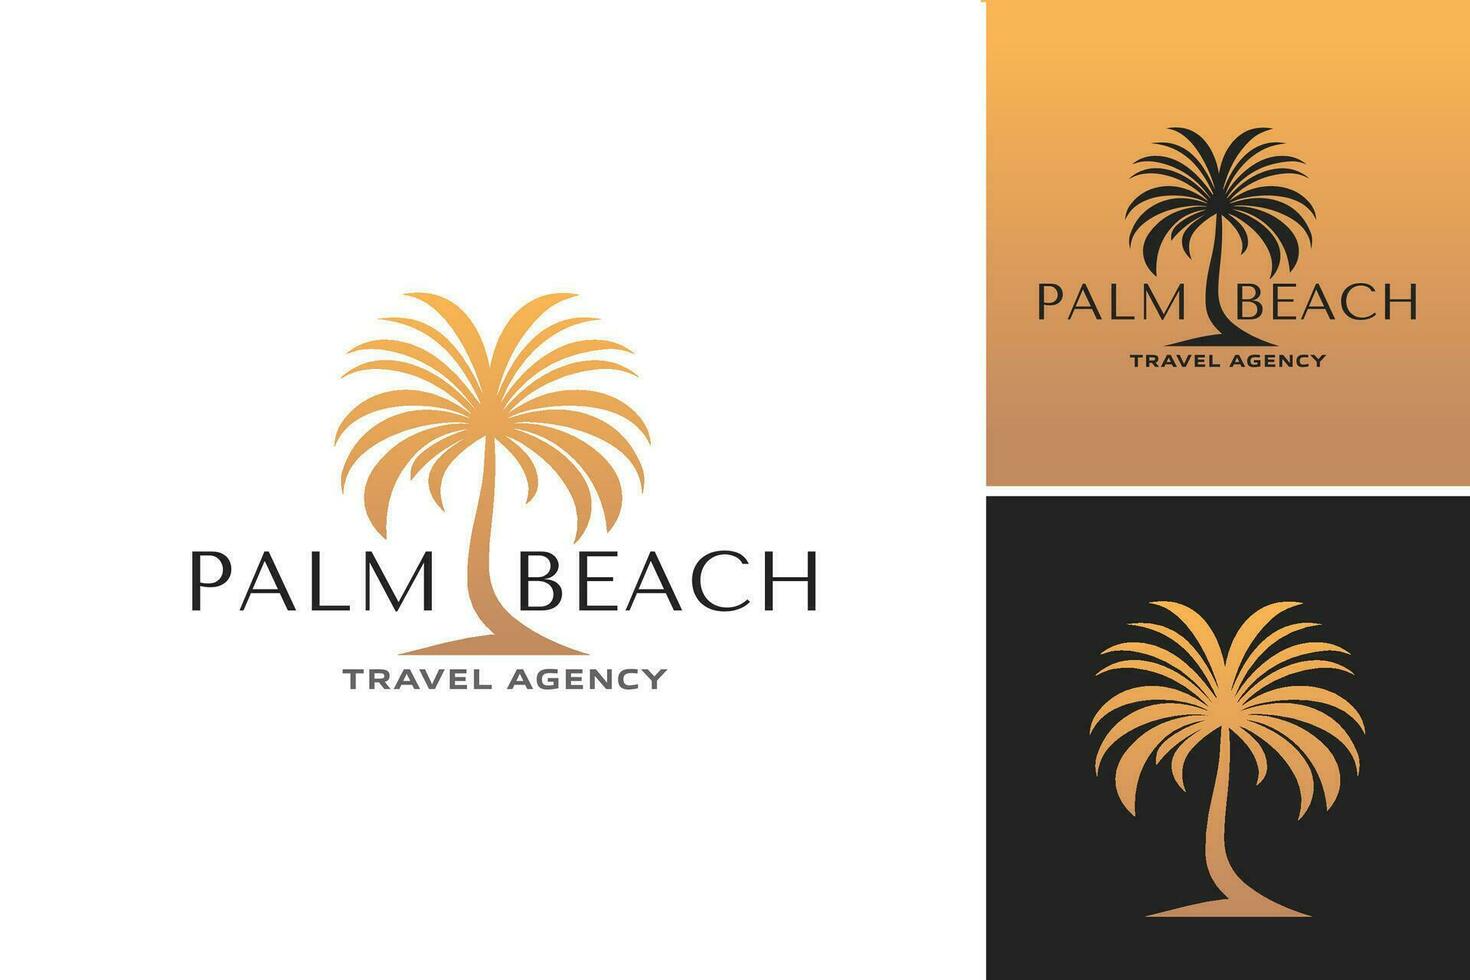 palma spiaggia viaggio agenzia logo design modello è un' vivace e accattivante logo design risorsa quello è Perfetto per promozione viaggio agenzie specializzato nel vacanza pacchi per palma spiaggia. vettore